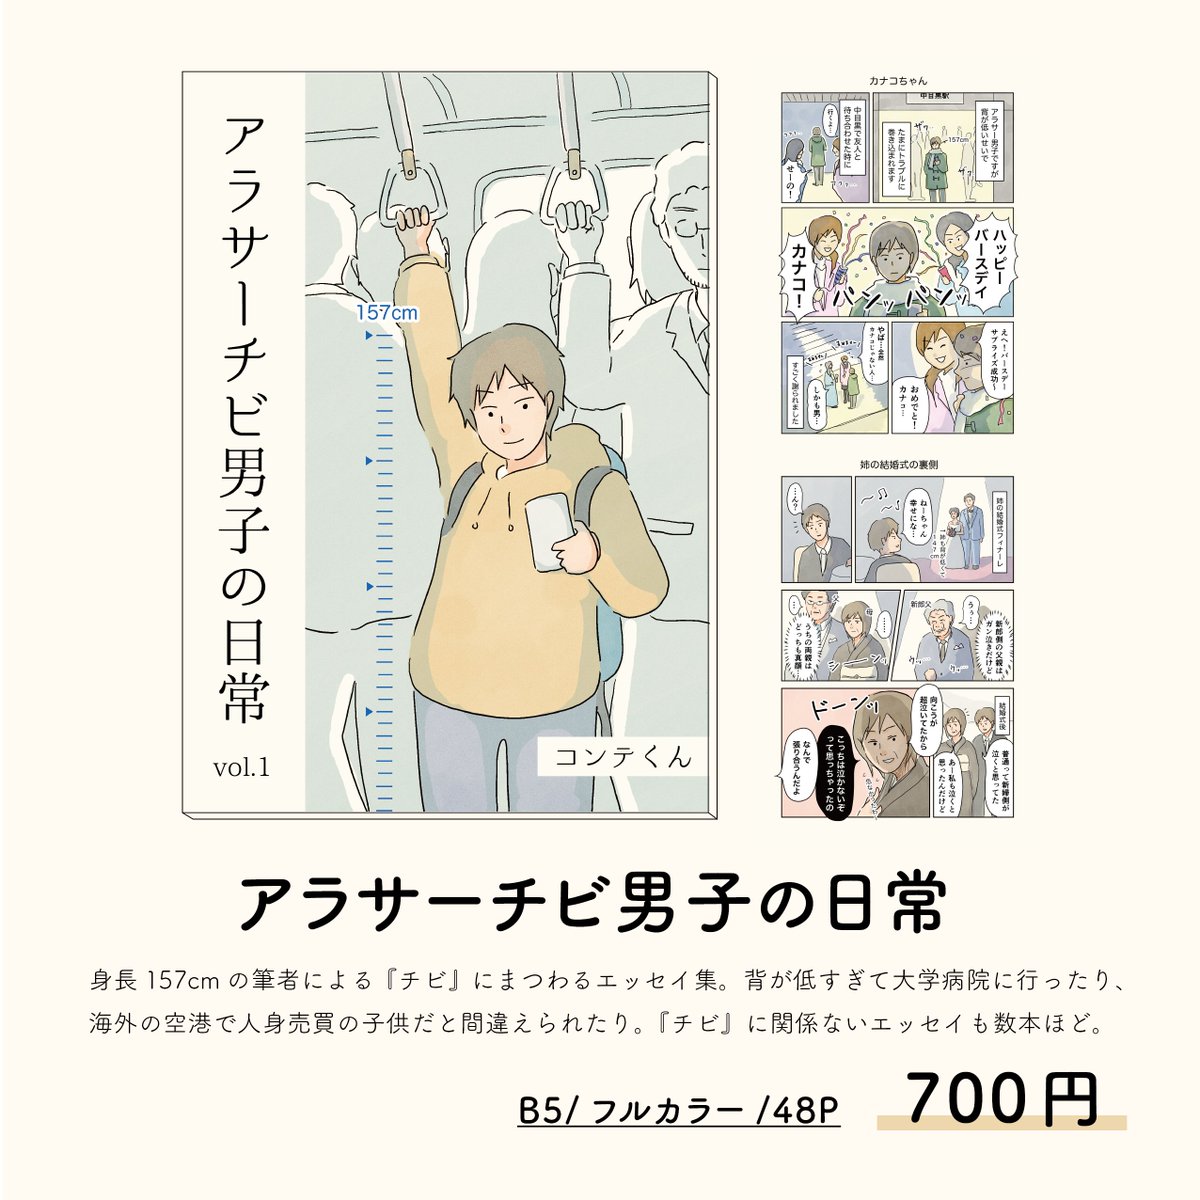 2/19(日)@東京ビッグサイトで行われる #コミティア143 に参加します!スペースは東4ホール【え32a】。
新刊はないのですが、無料配布の新作ポストカードを用意する予定です!
#男子校エッセイ は残り少なく、書籍の方ではほぼ描き直しているので、ある意味昔の画風が味わえる作品です…笑
#COMITIA143 